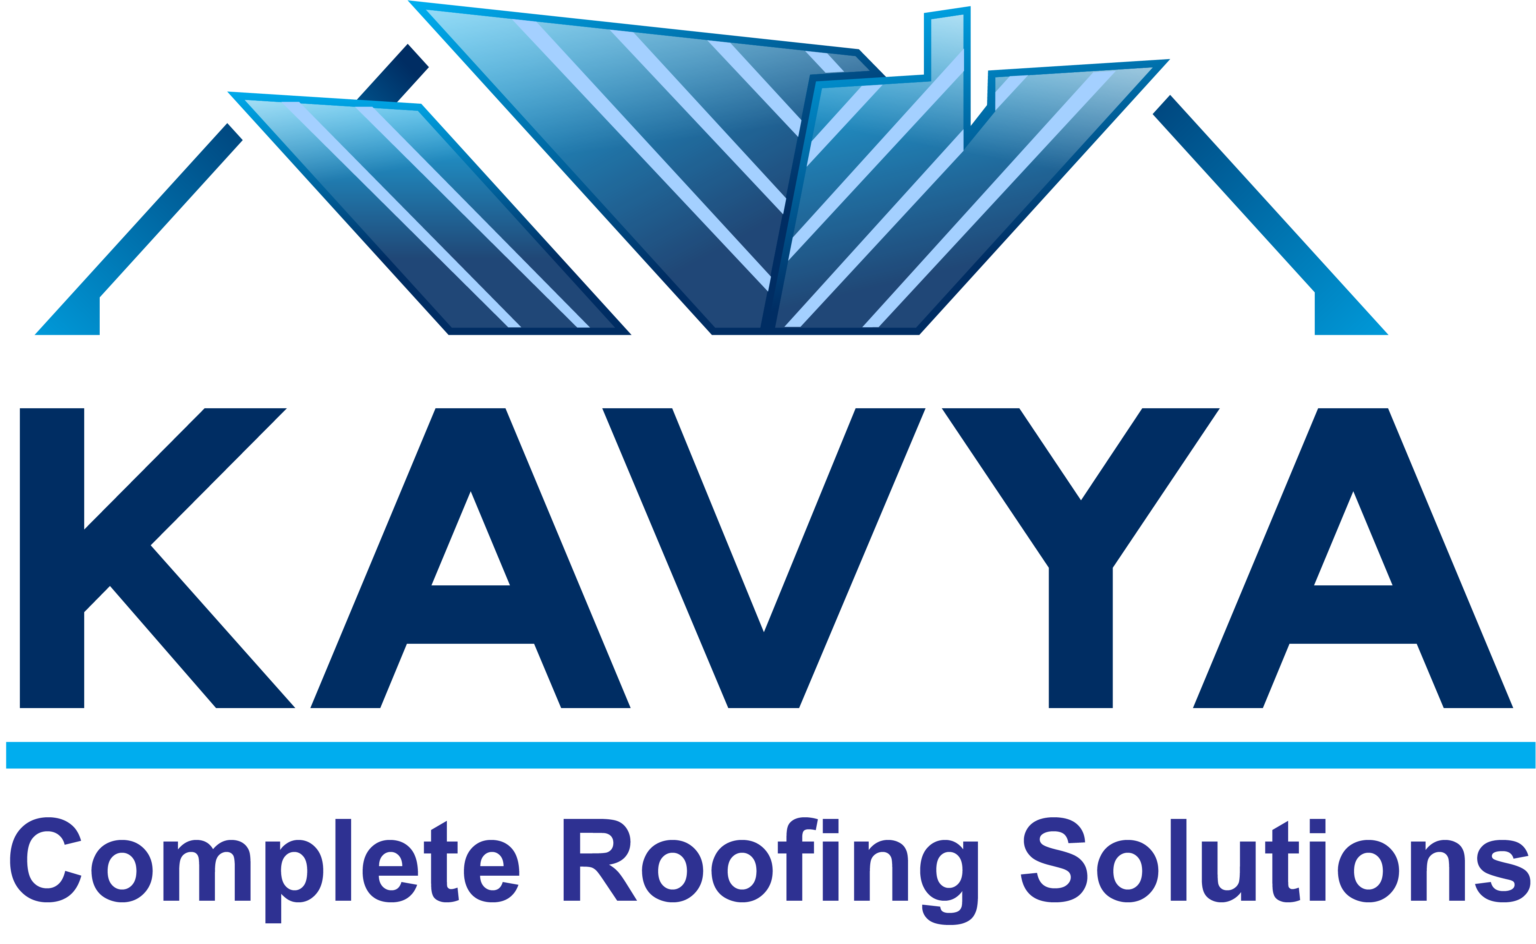 Kavya Roofing